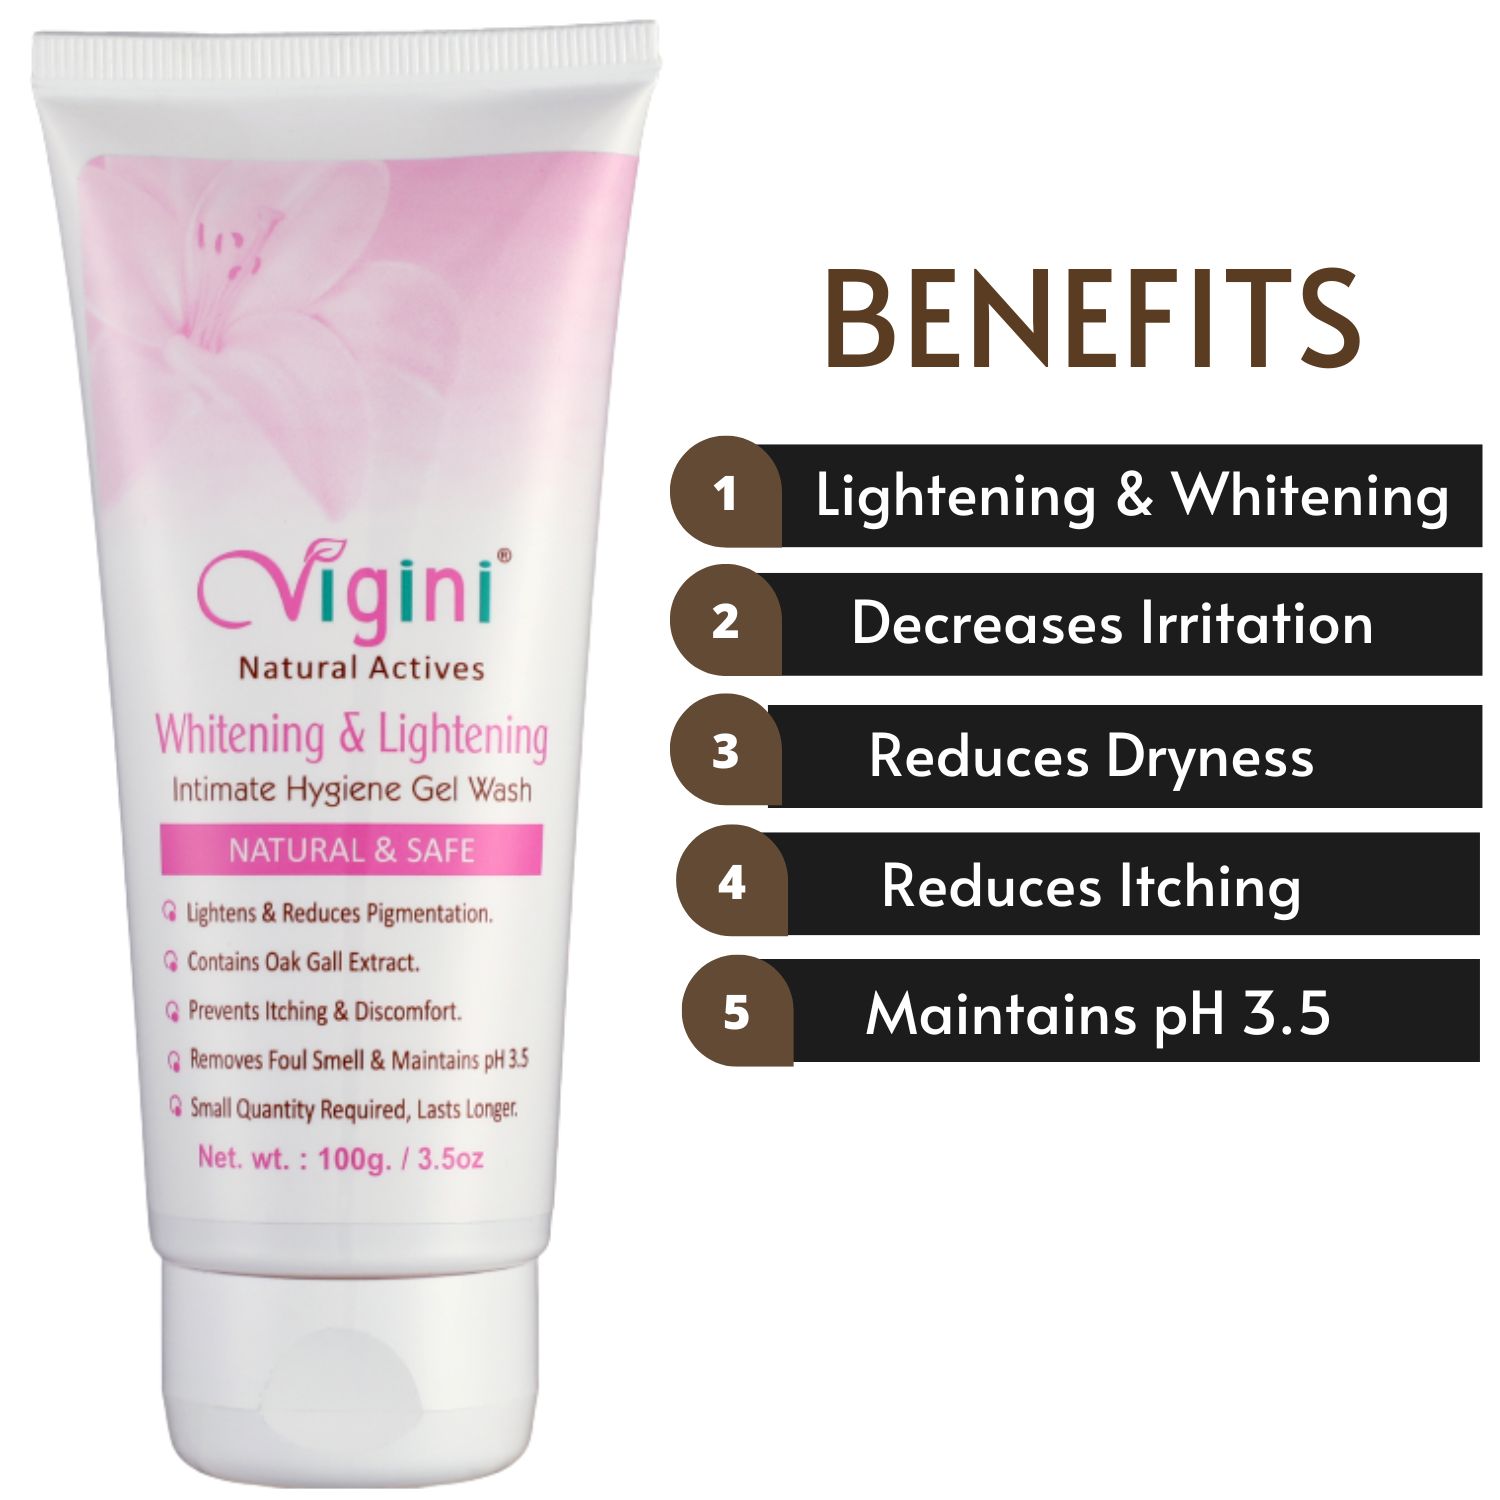 Whitening & Lightening Intimate Hygiene Gel Wash